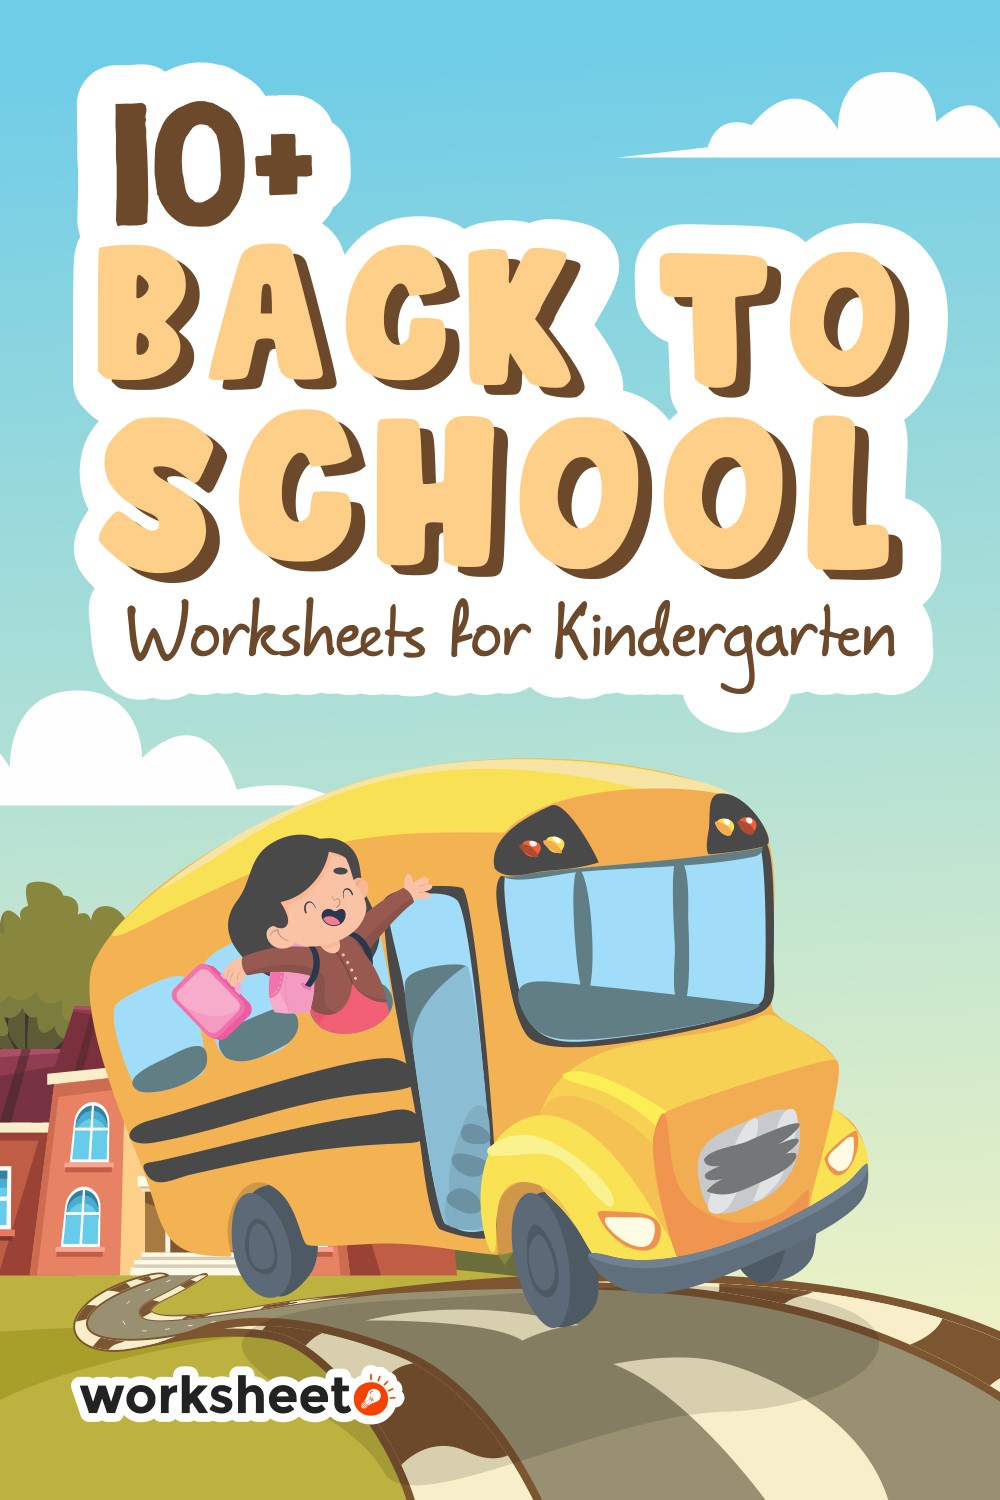 17 Images of Back To School Worksheets For Kindergarten